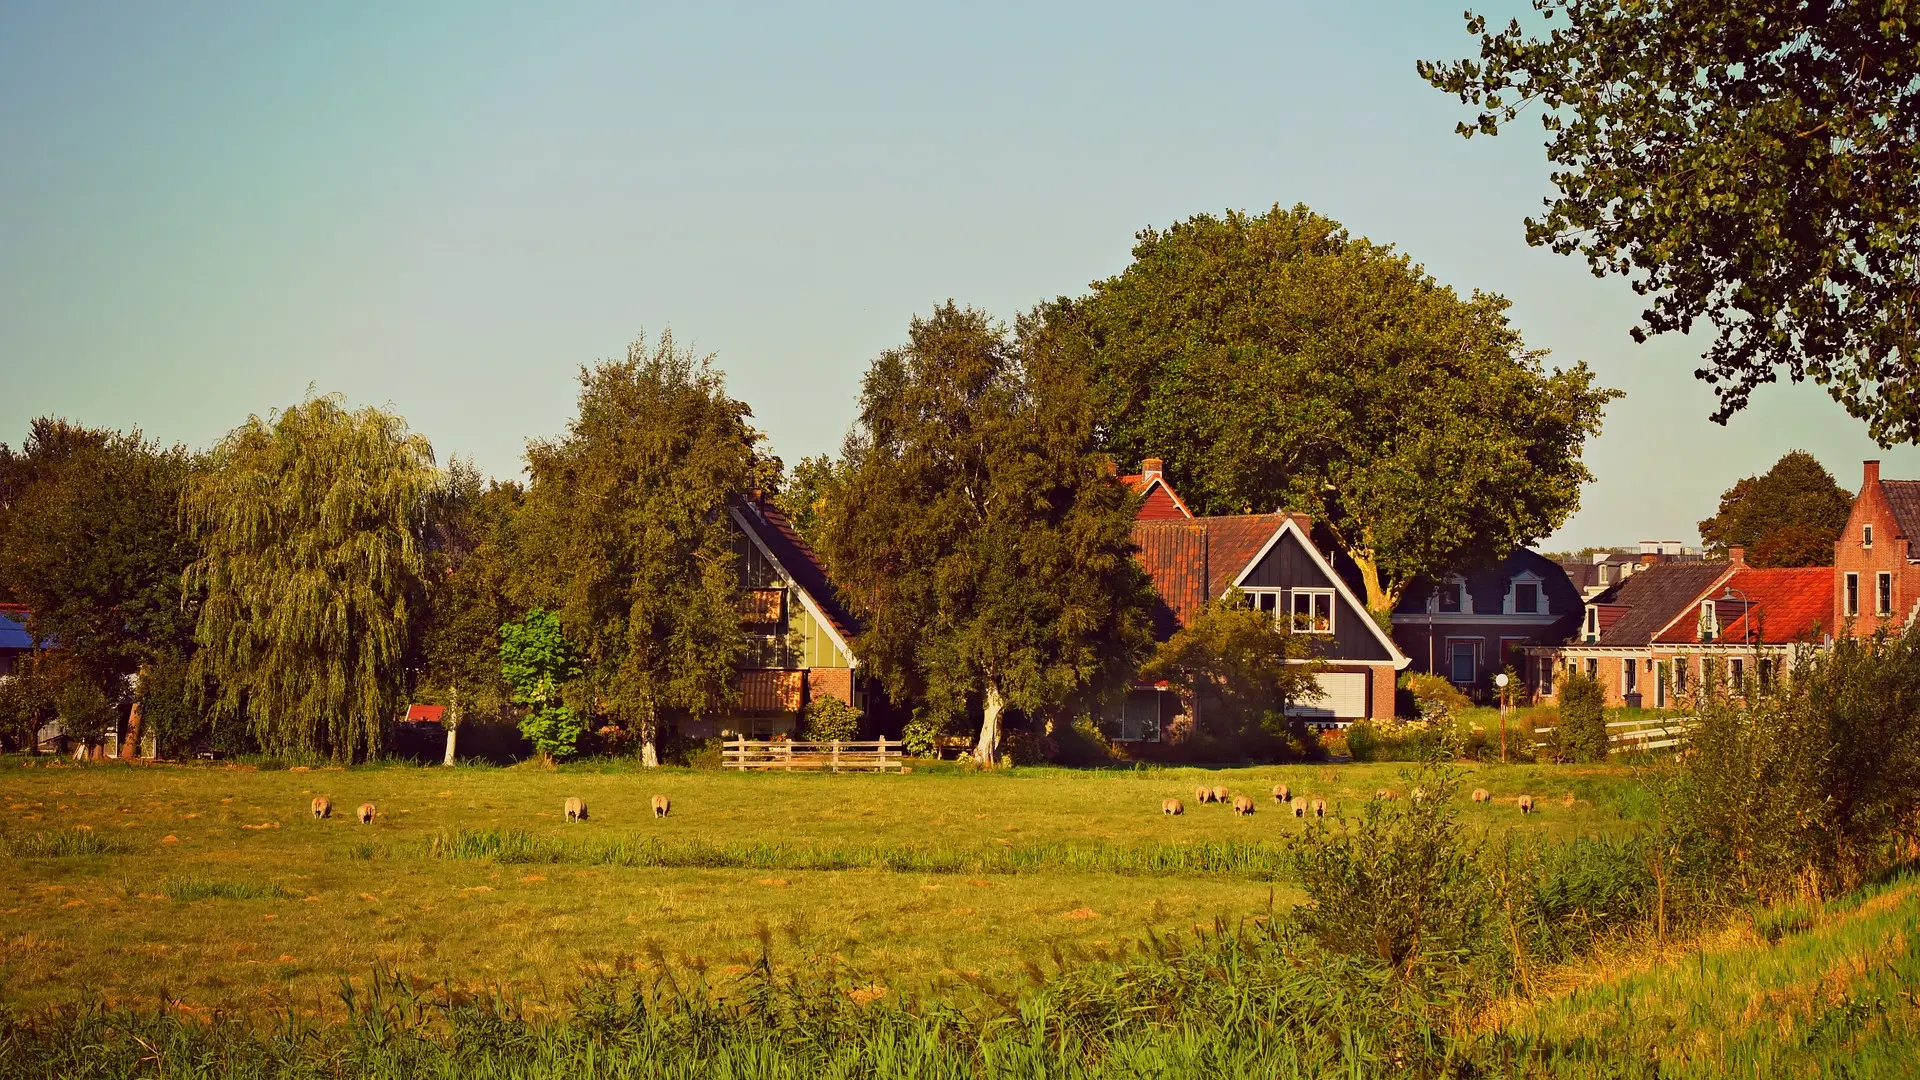 holandsko selo-63c11b146f9b5.webp